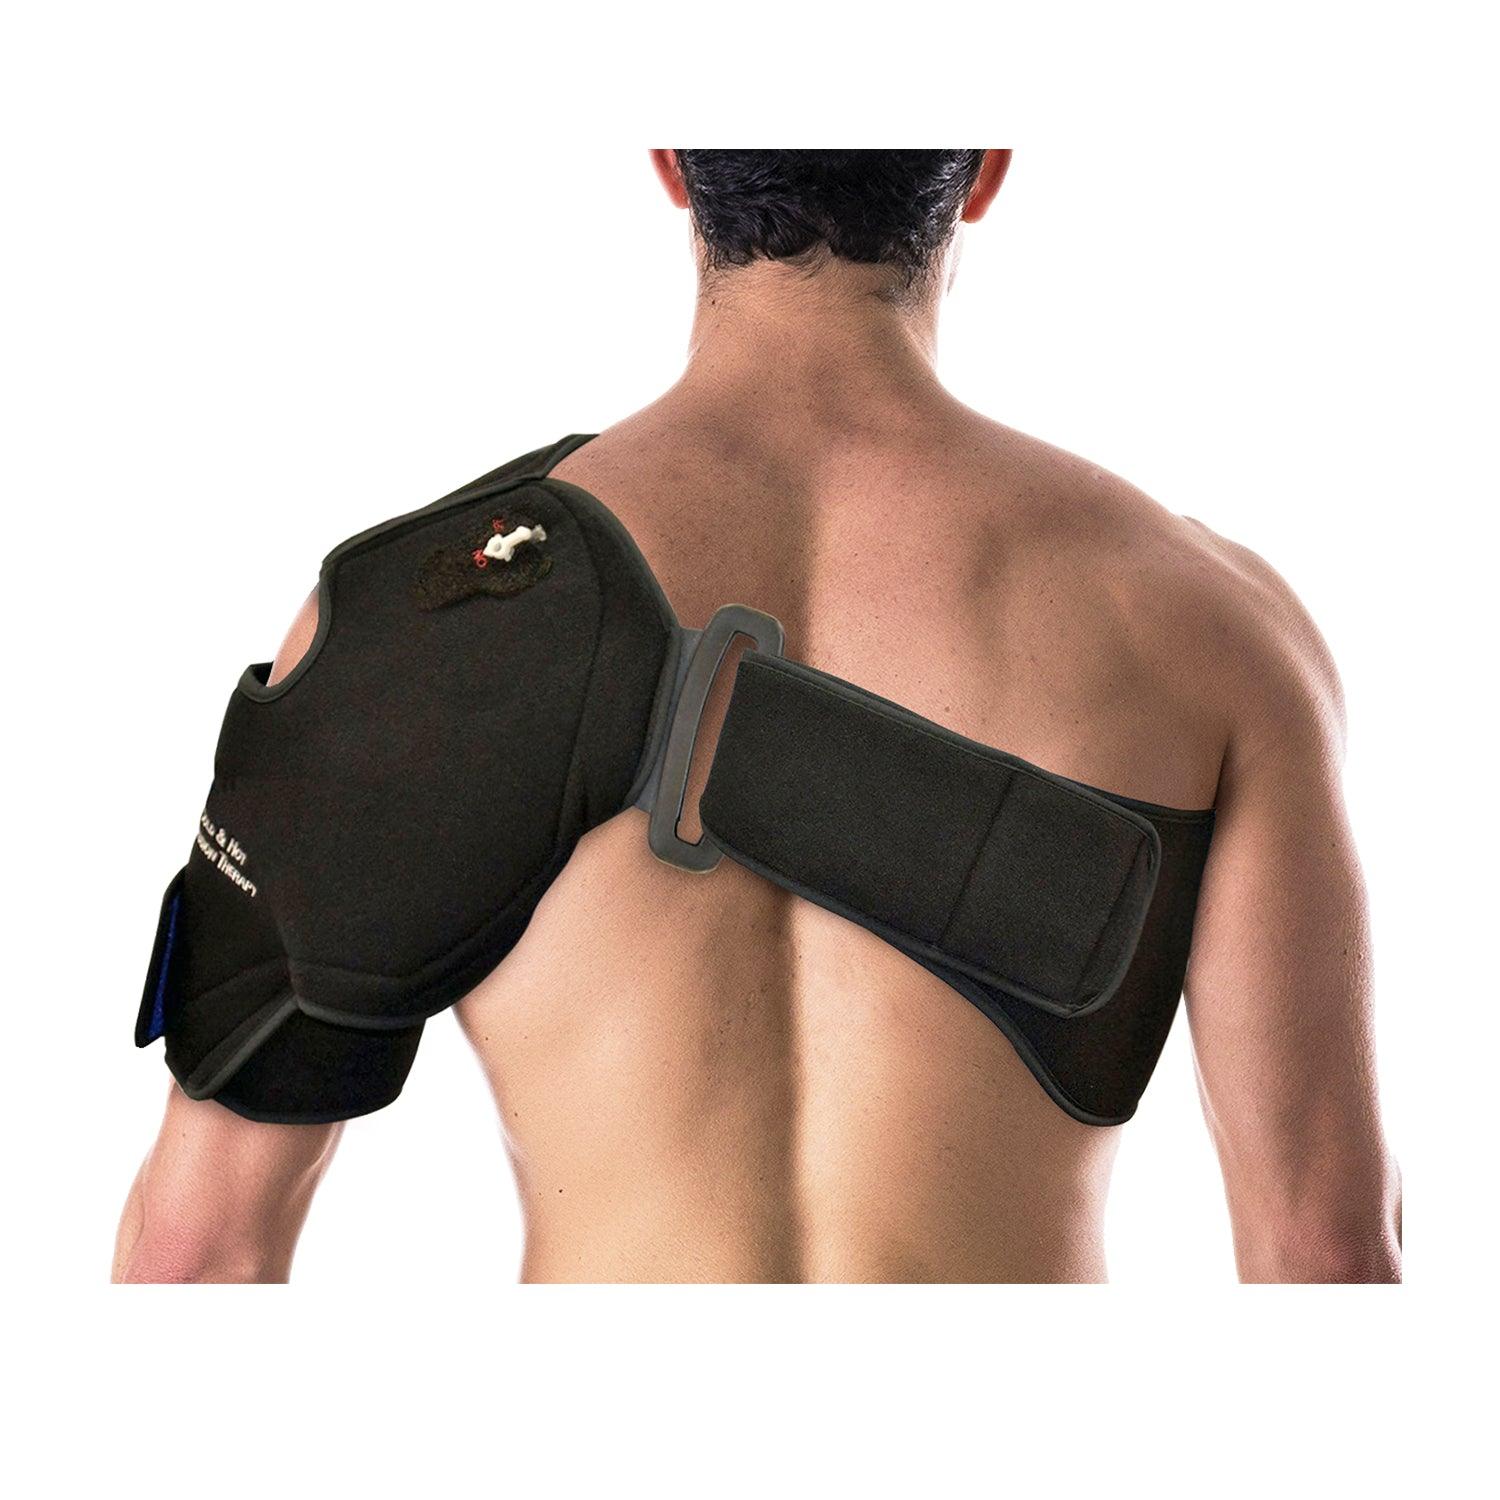 Doctor Developed Shoulder Brace - Rotator Cuff Shoulder Brace for